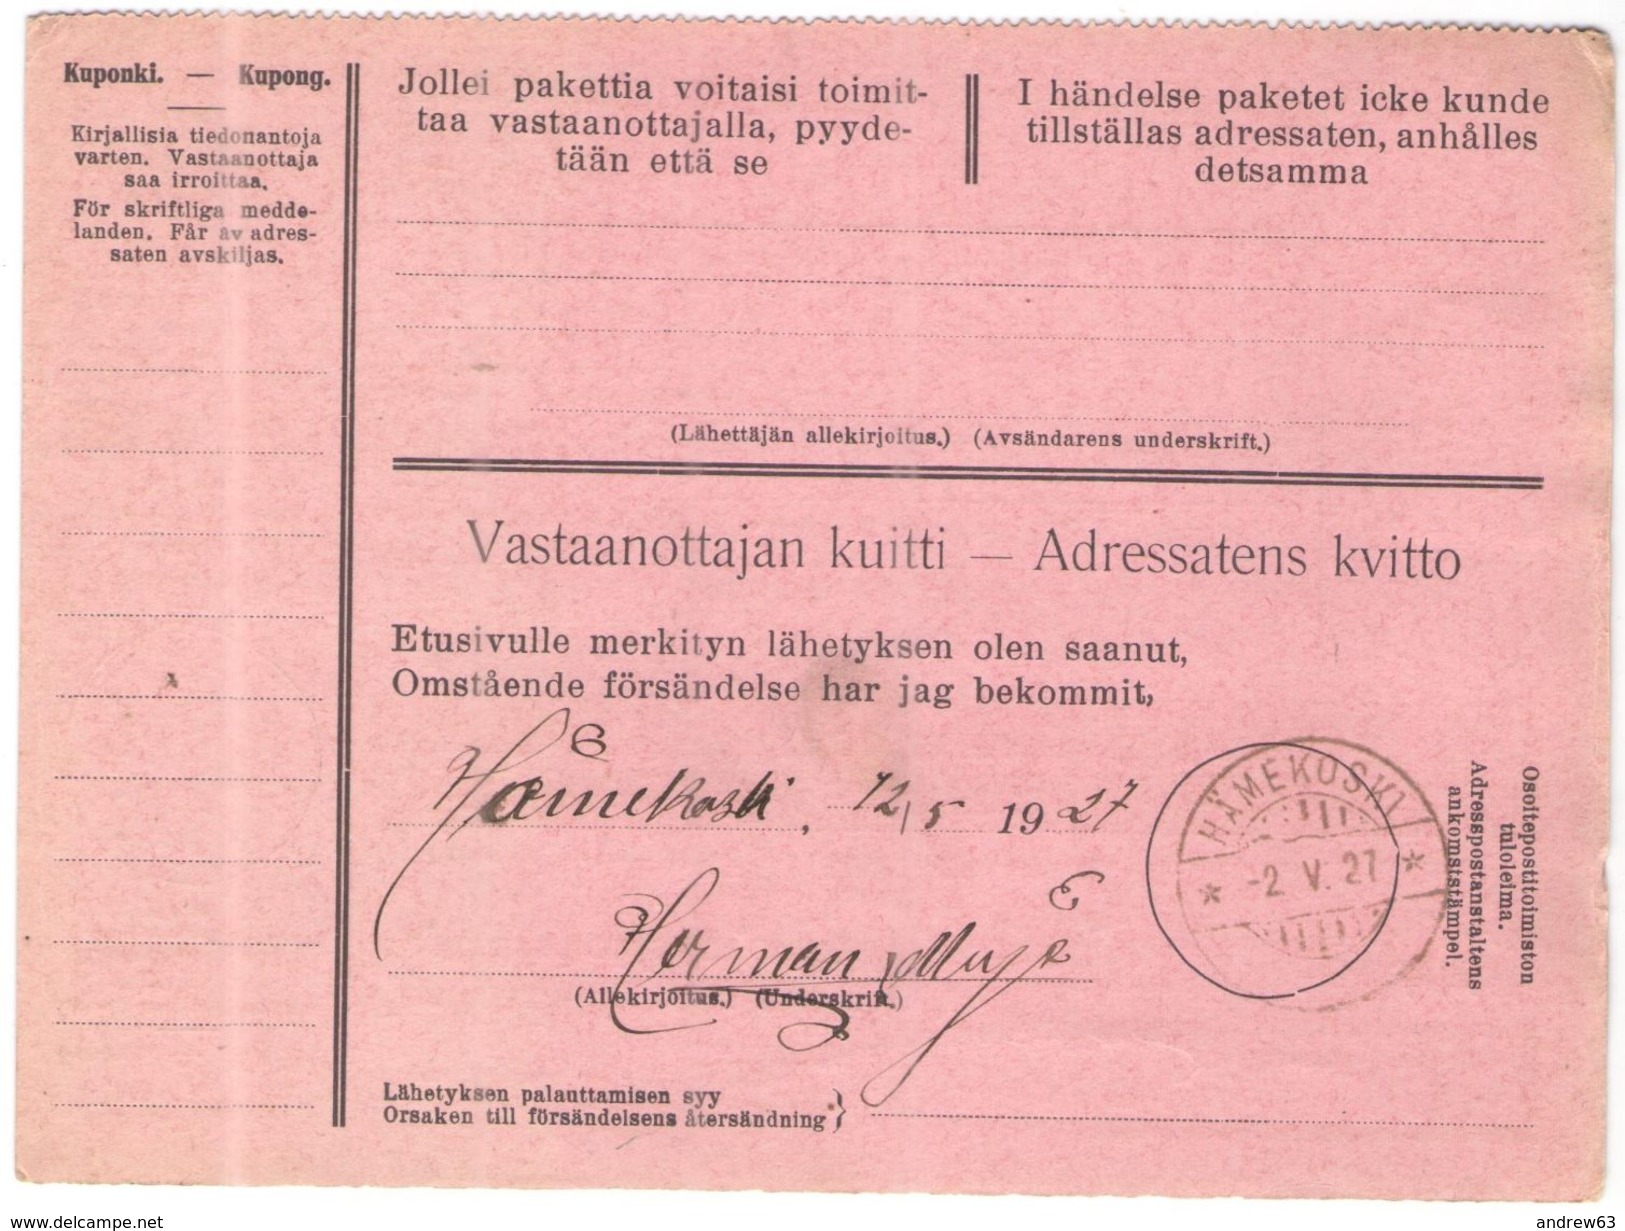 FINLANDIA - Finland - 1927 - Postiennakko-Osoitekortti - Adresskort Paket Packet Freight Bill Card - Viaggiata Da Helsin - Colis Postaux